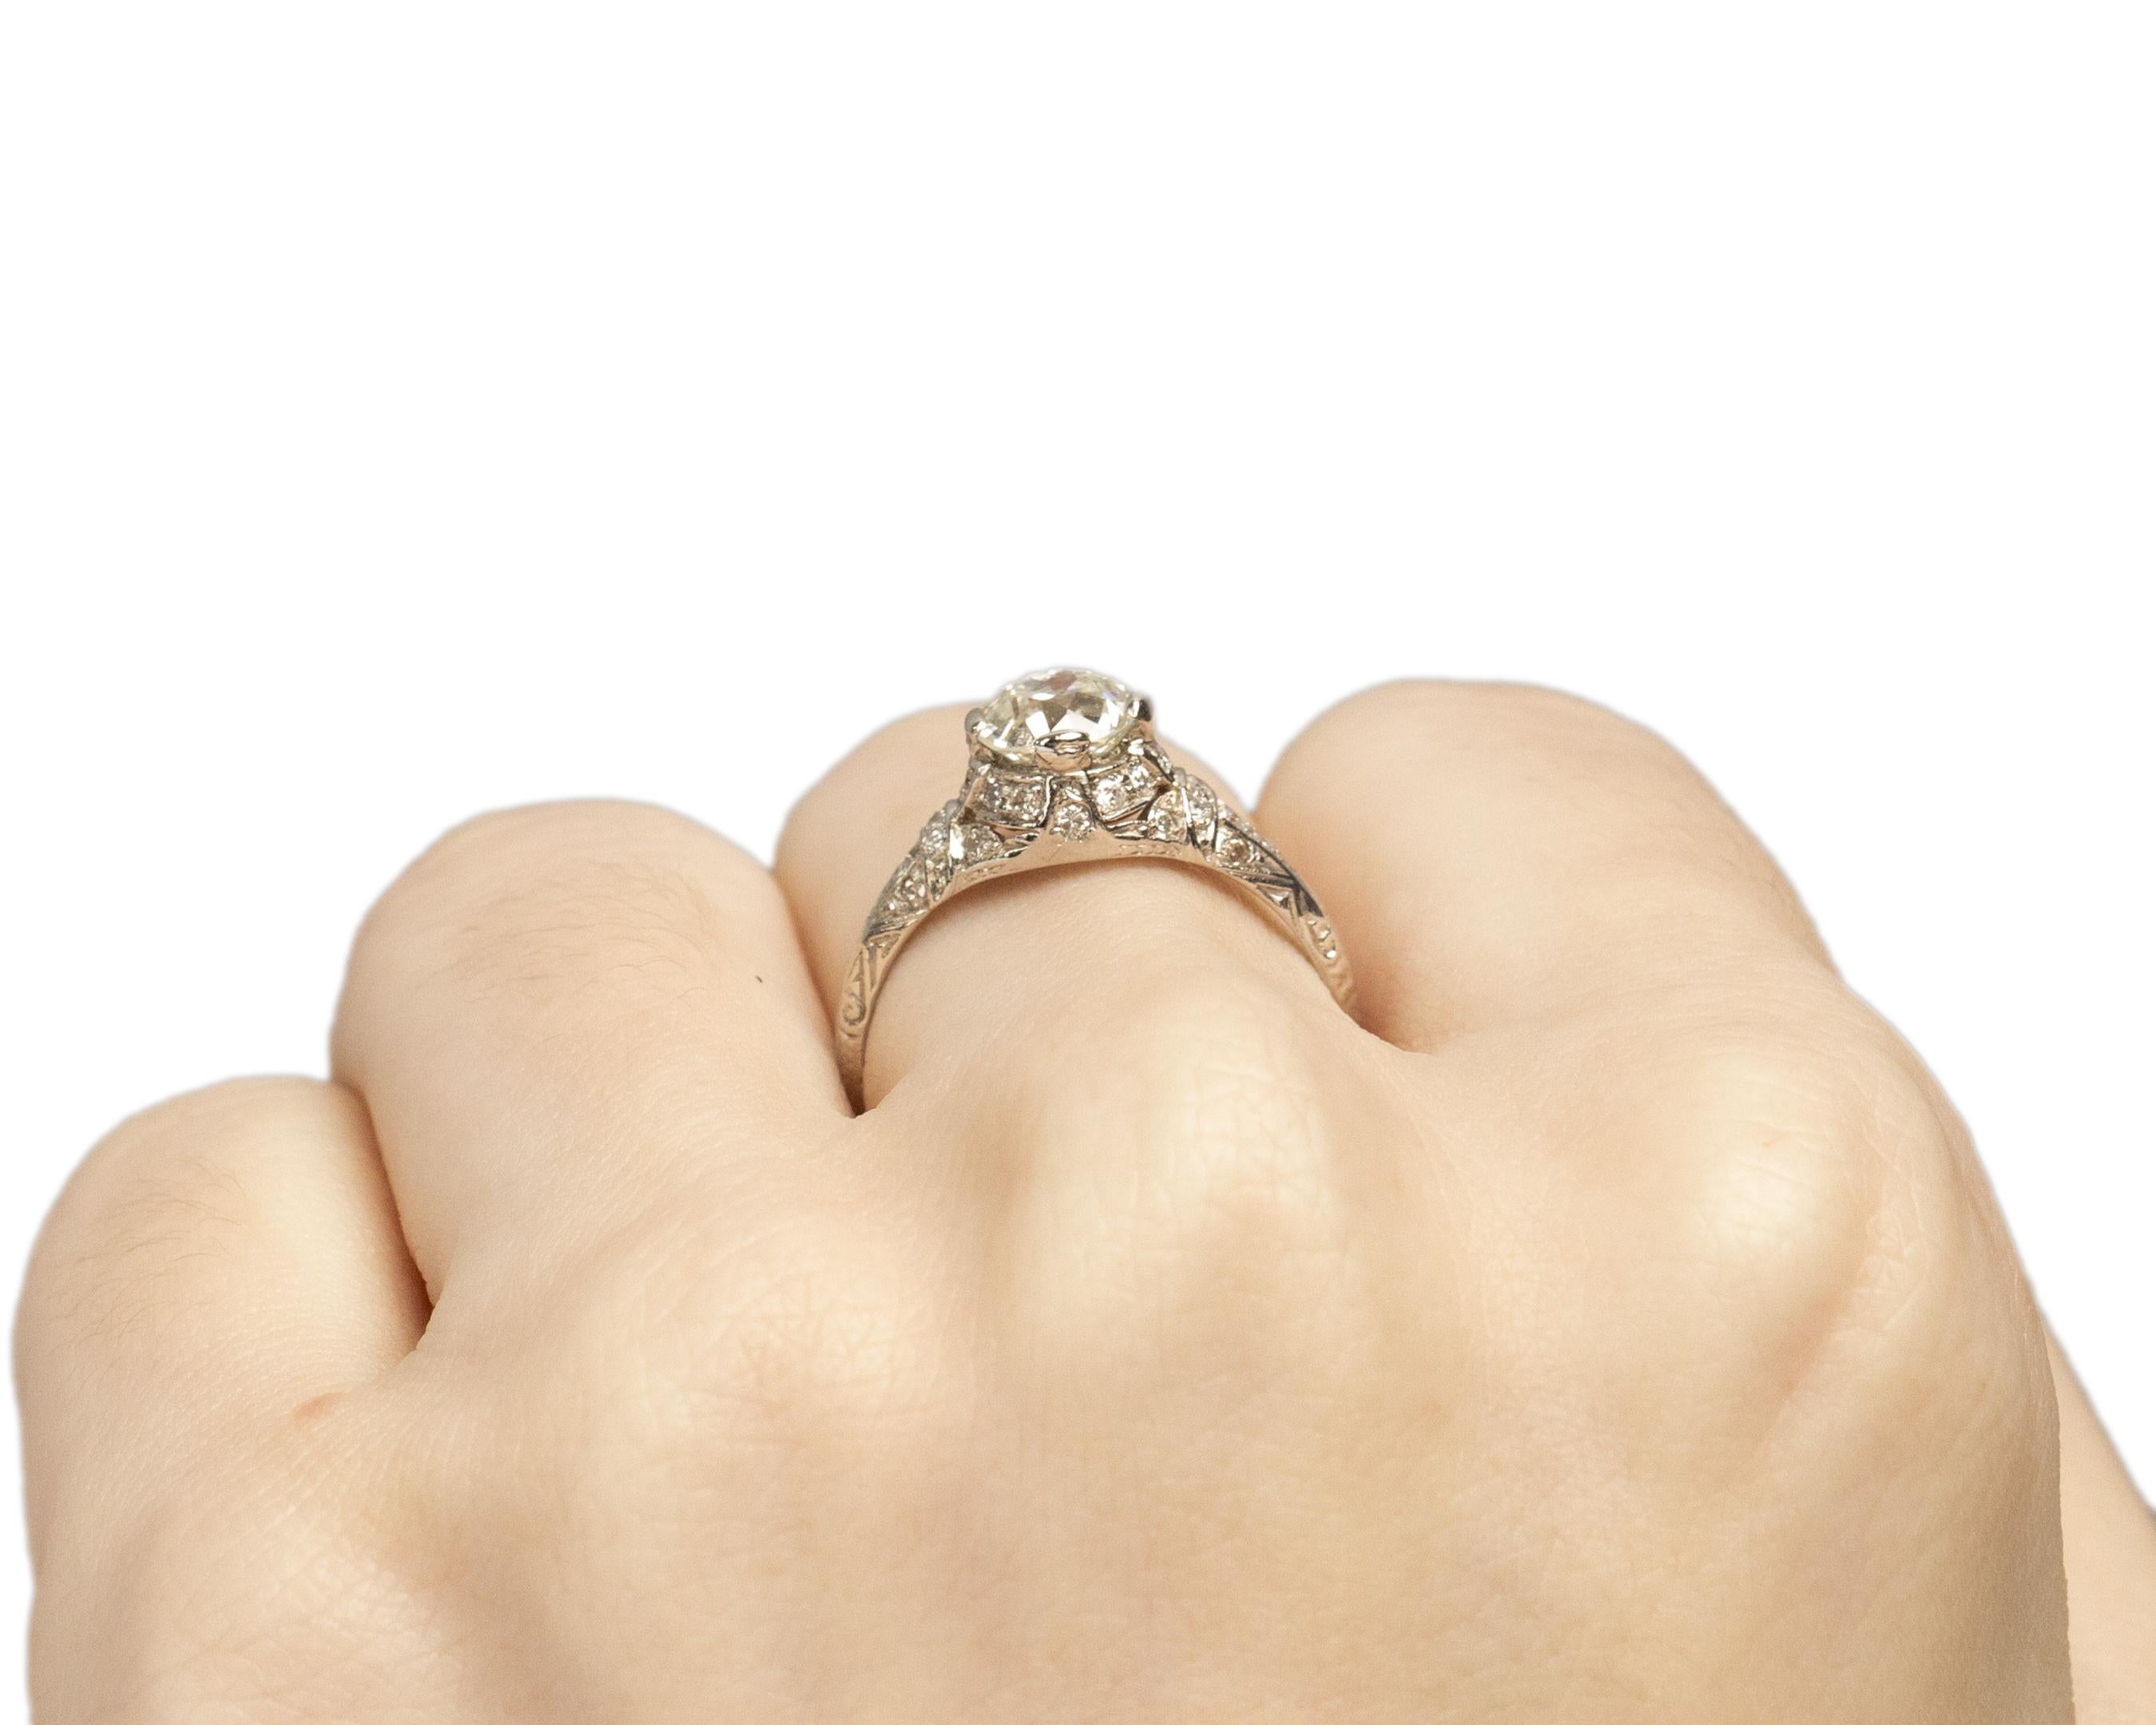 Platinum Art Deco 1.01 Carat Old European Brilliant Diamond Engagement Ring For Sale 1